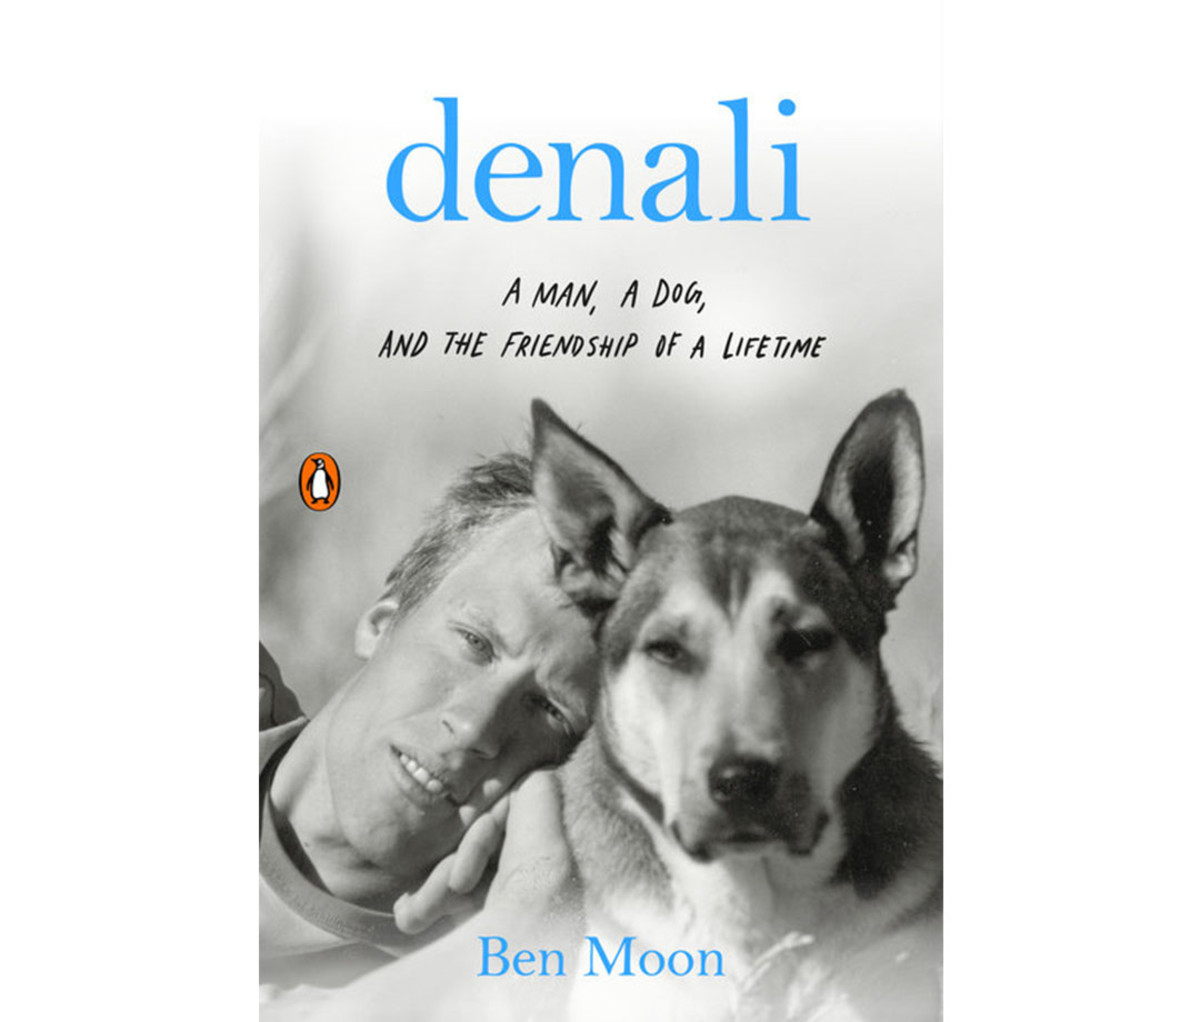 "Denali" by Ben Moon